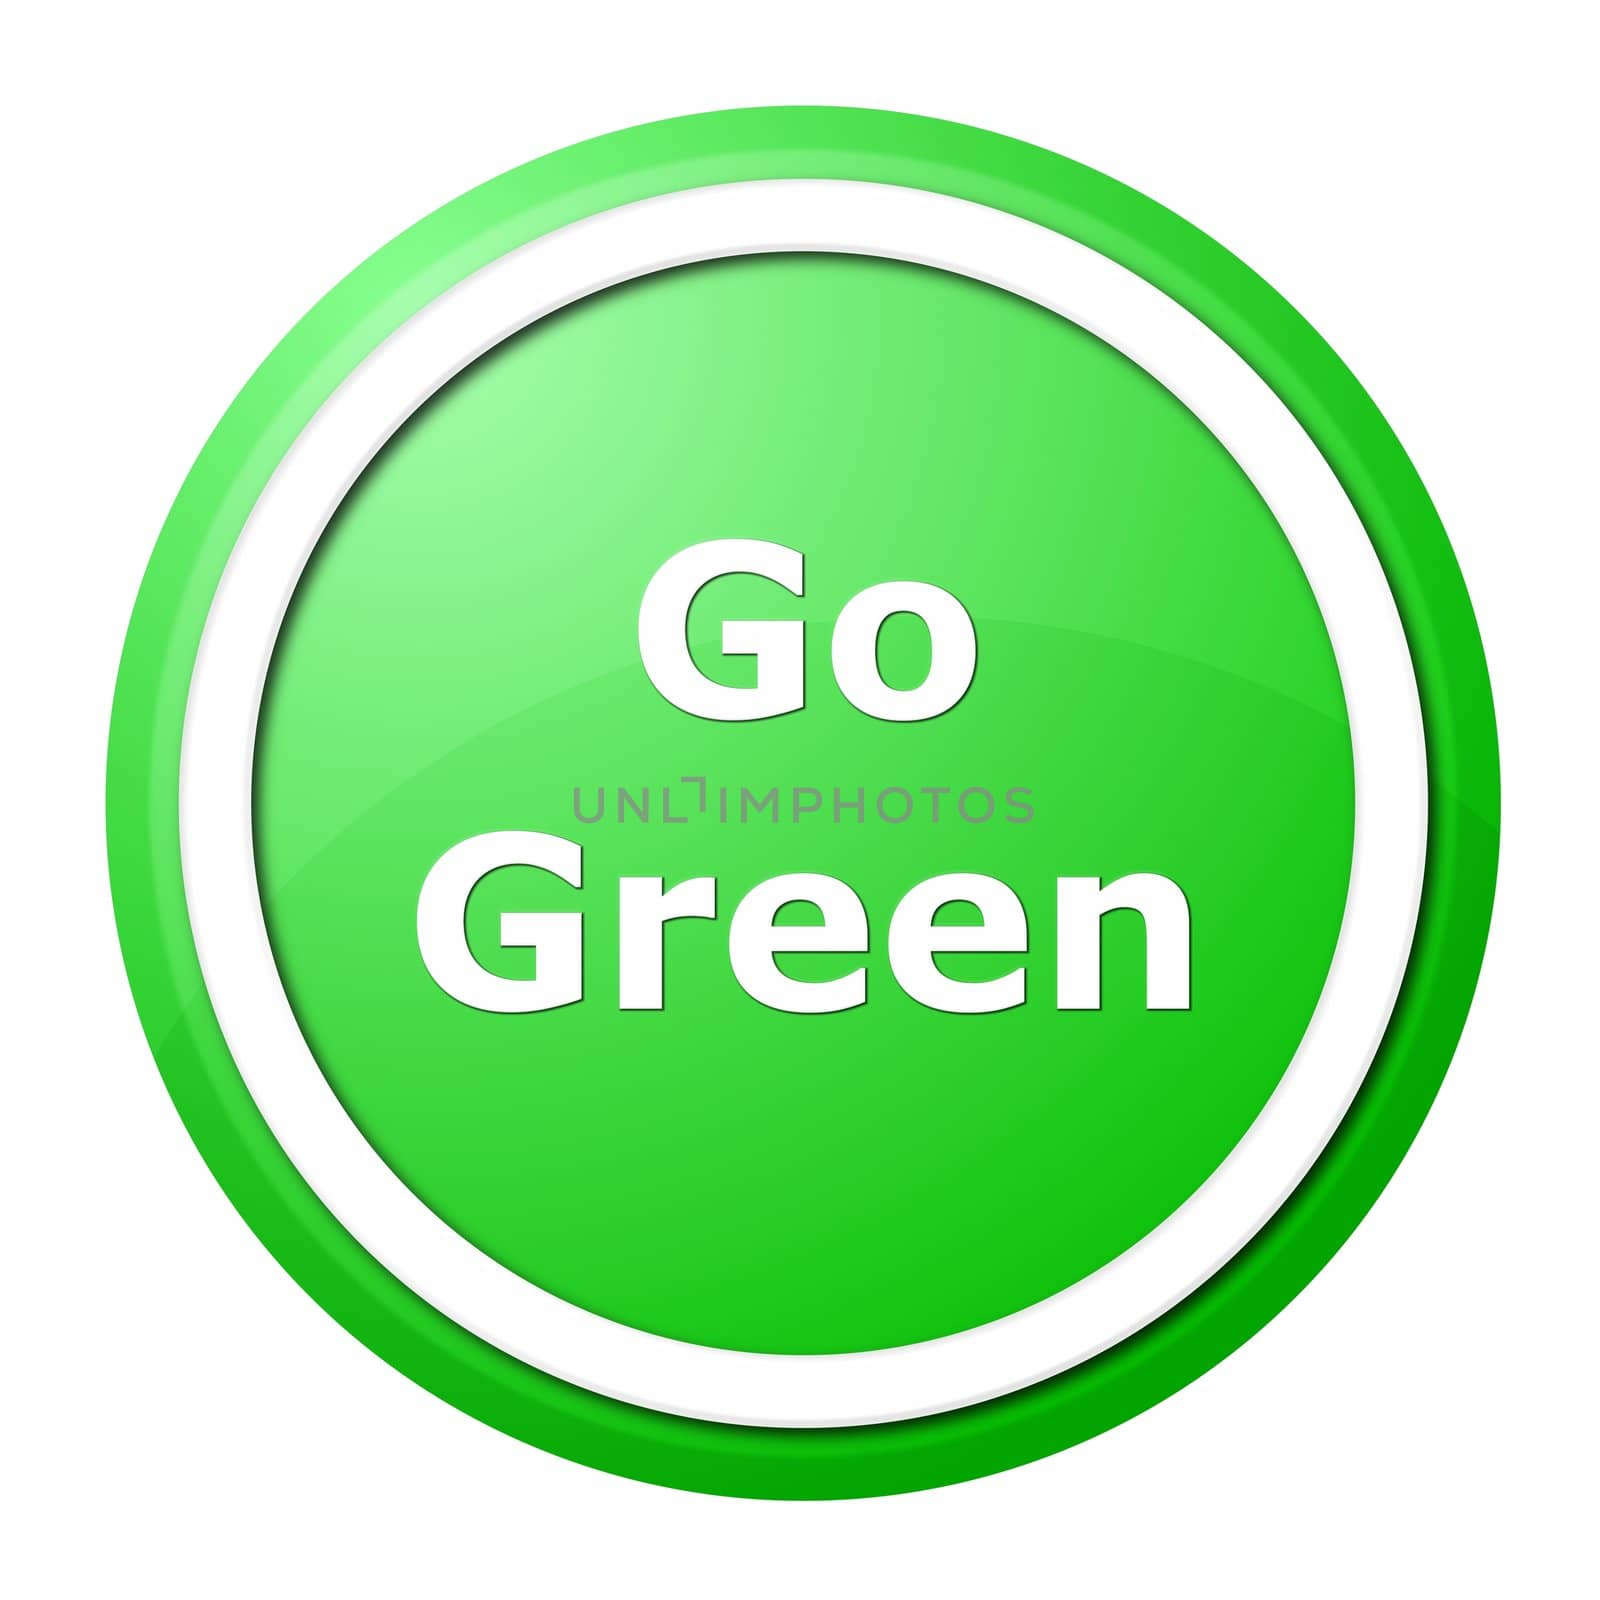 Go Green by hlehnerer